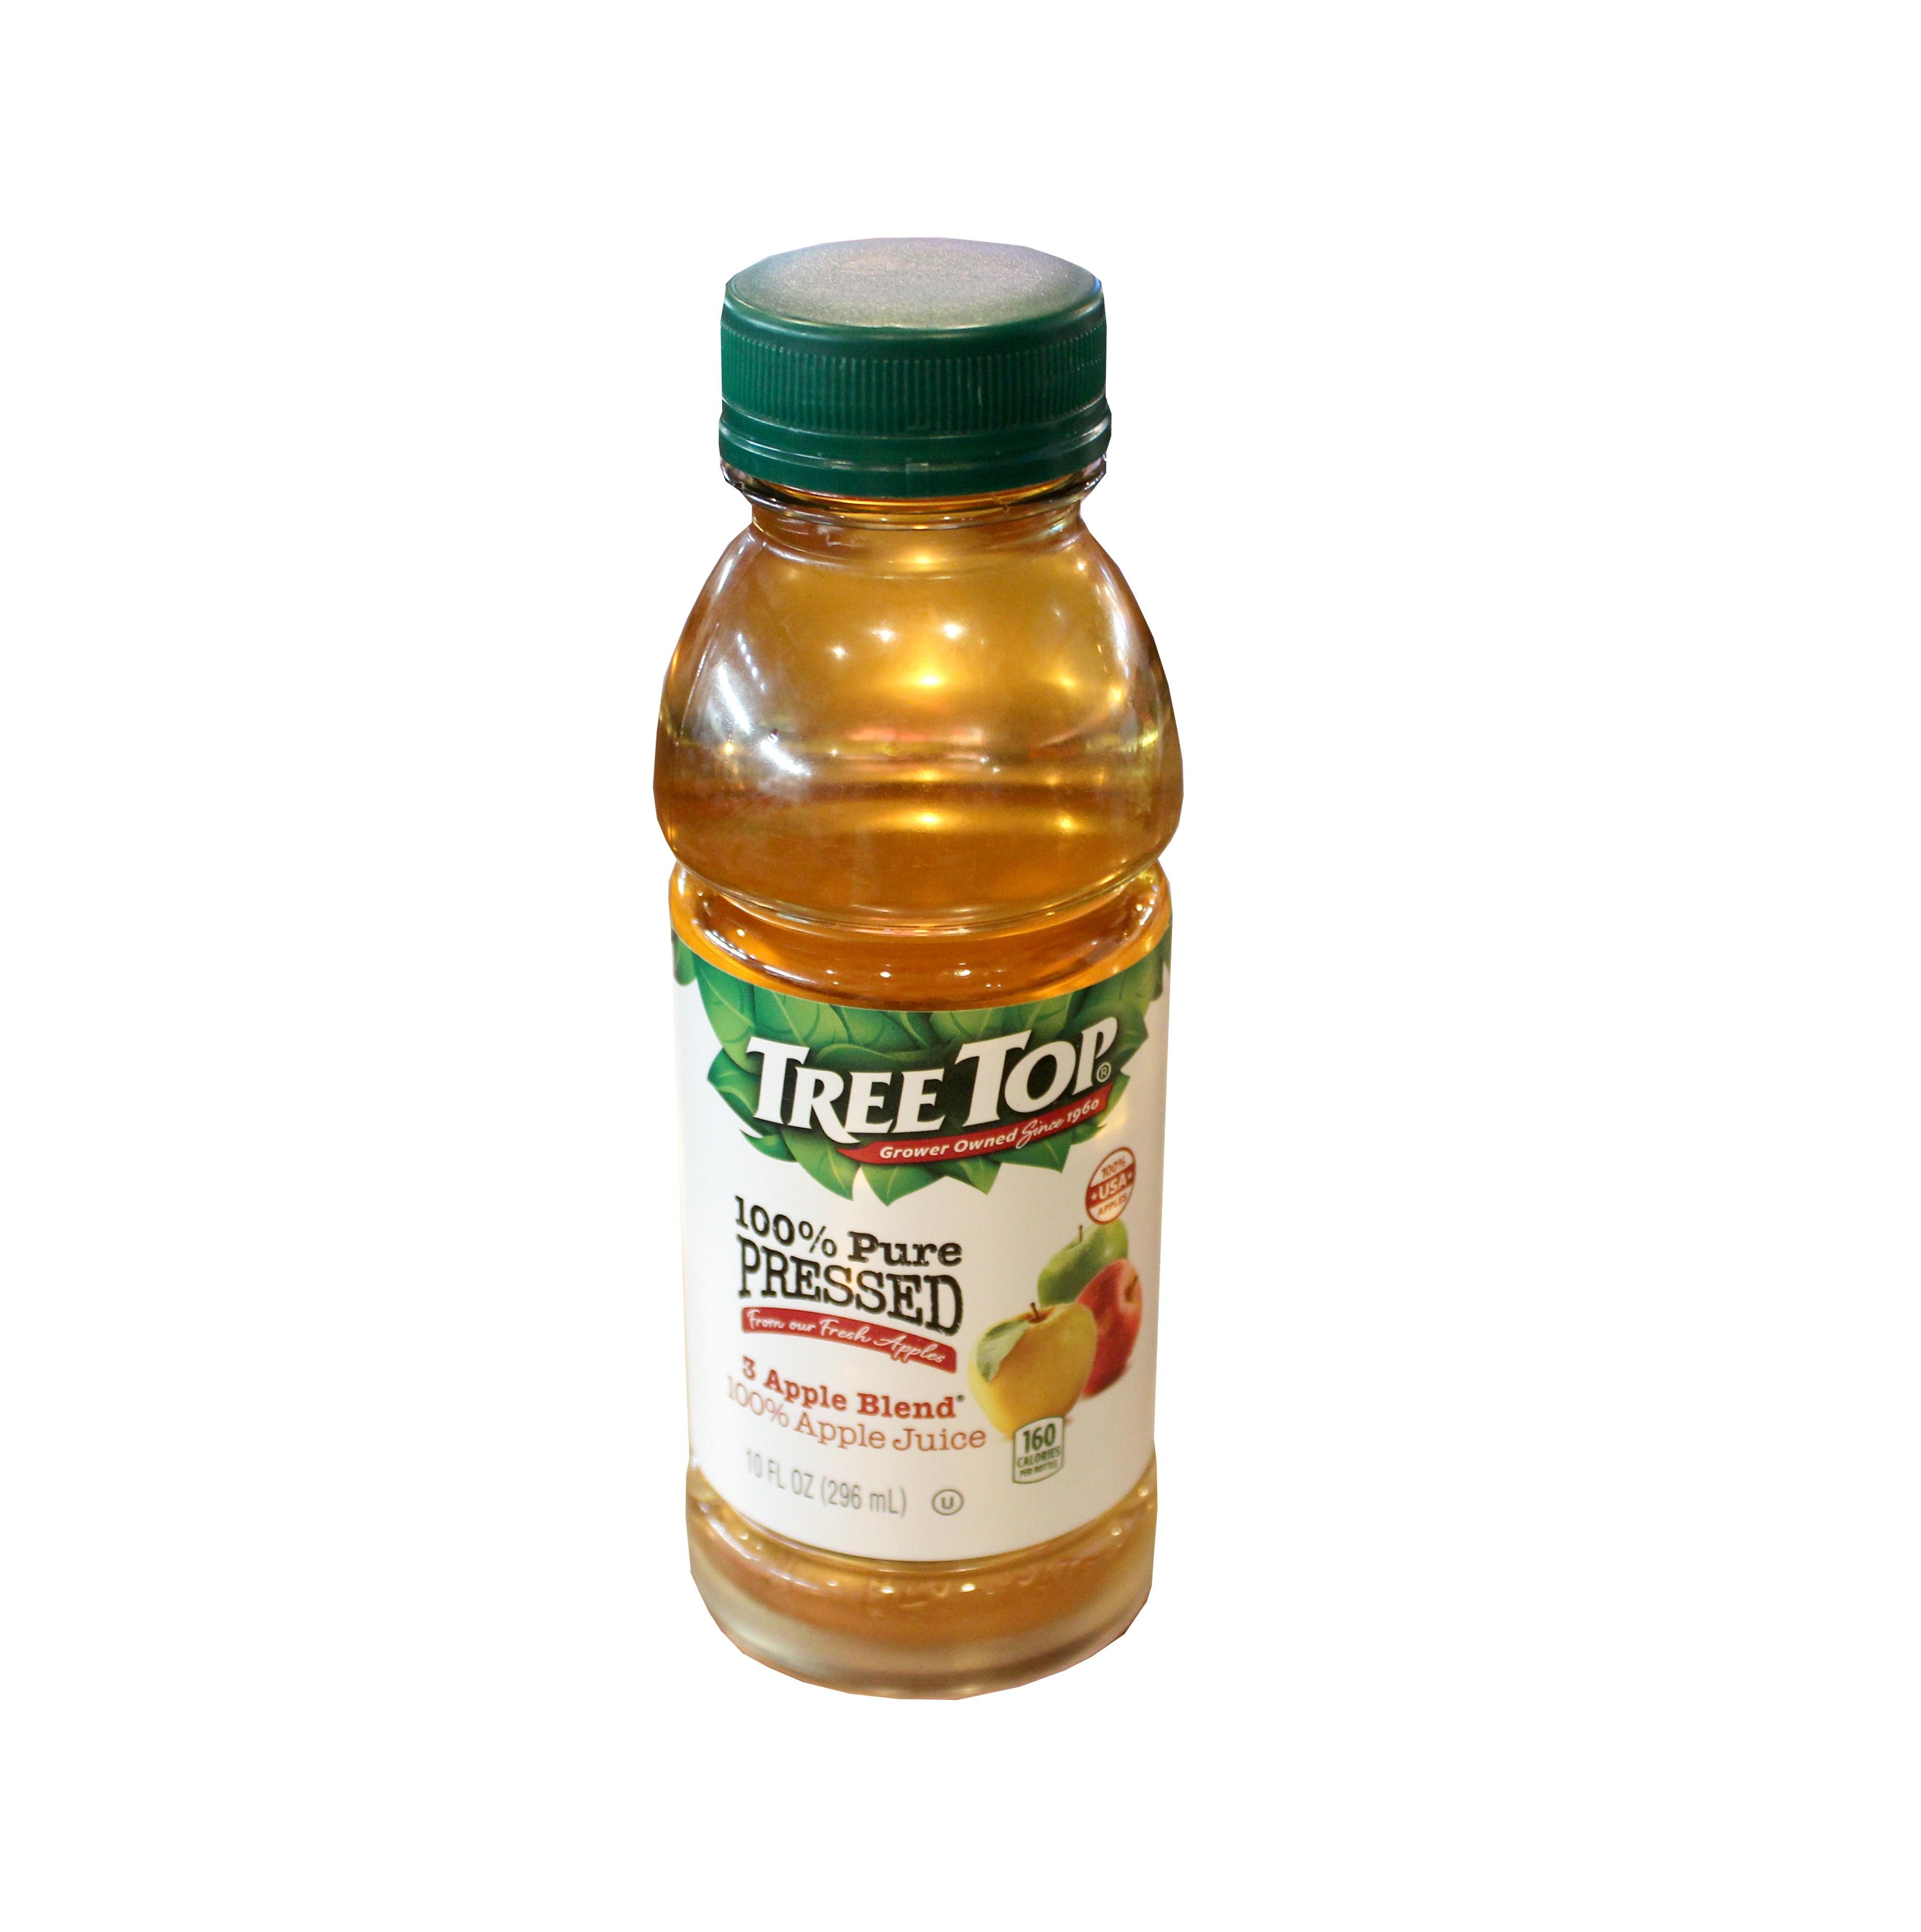 TREE TOP Apple Juice (296 ml) - 10 fl oz